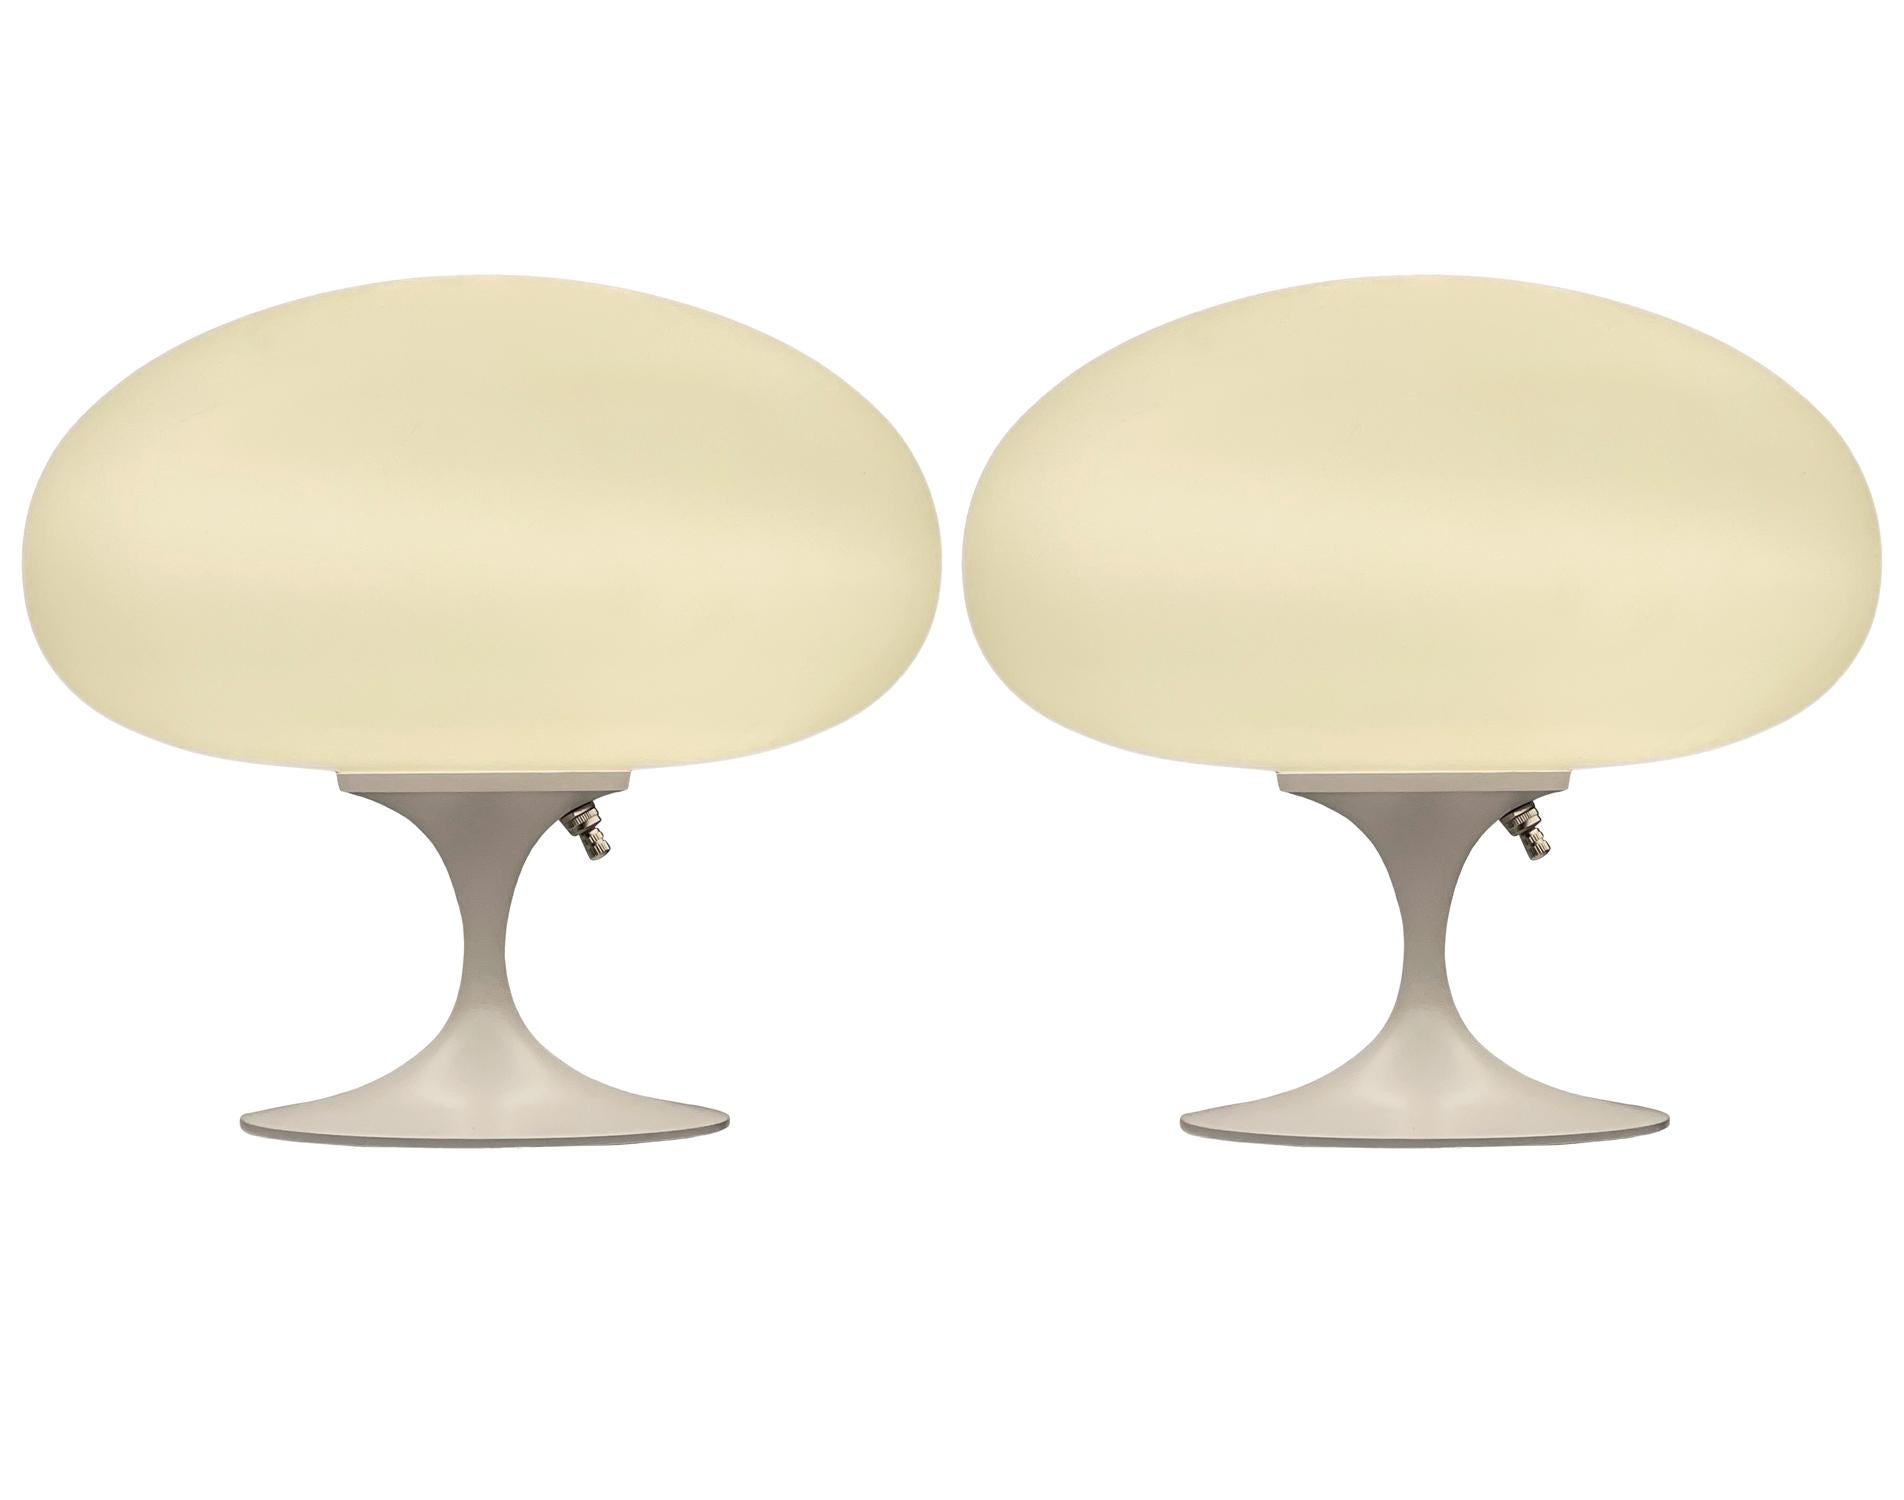 Une superbe paire de lampes de table en forme de tulipe de Laurel Lamp Company. Ces lampes sont dotées d'une base en aluminium coulé avec un revêtement en poudre blanc et d'un abat-jour en verre blanc dépoli soufflé à la bouche. Le prix comprend la